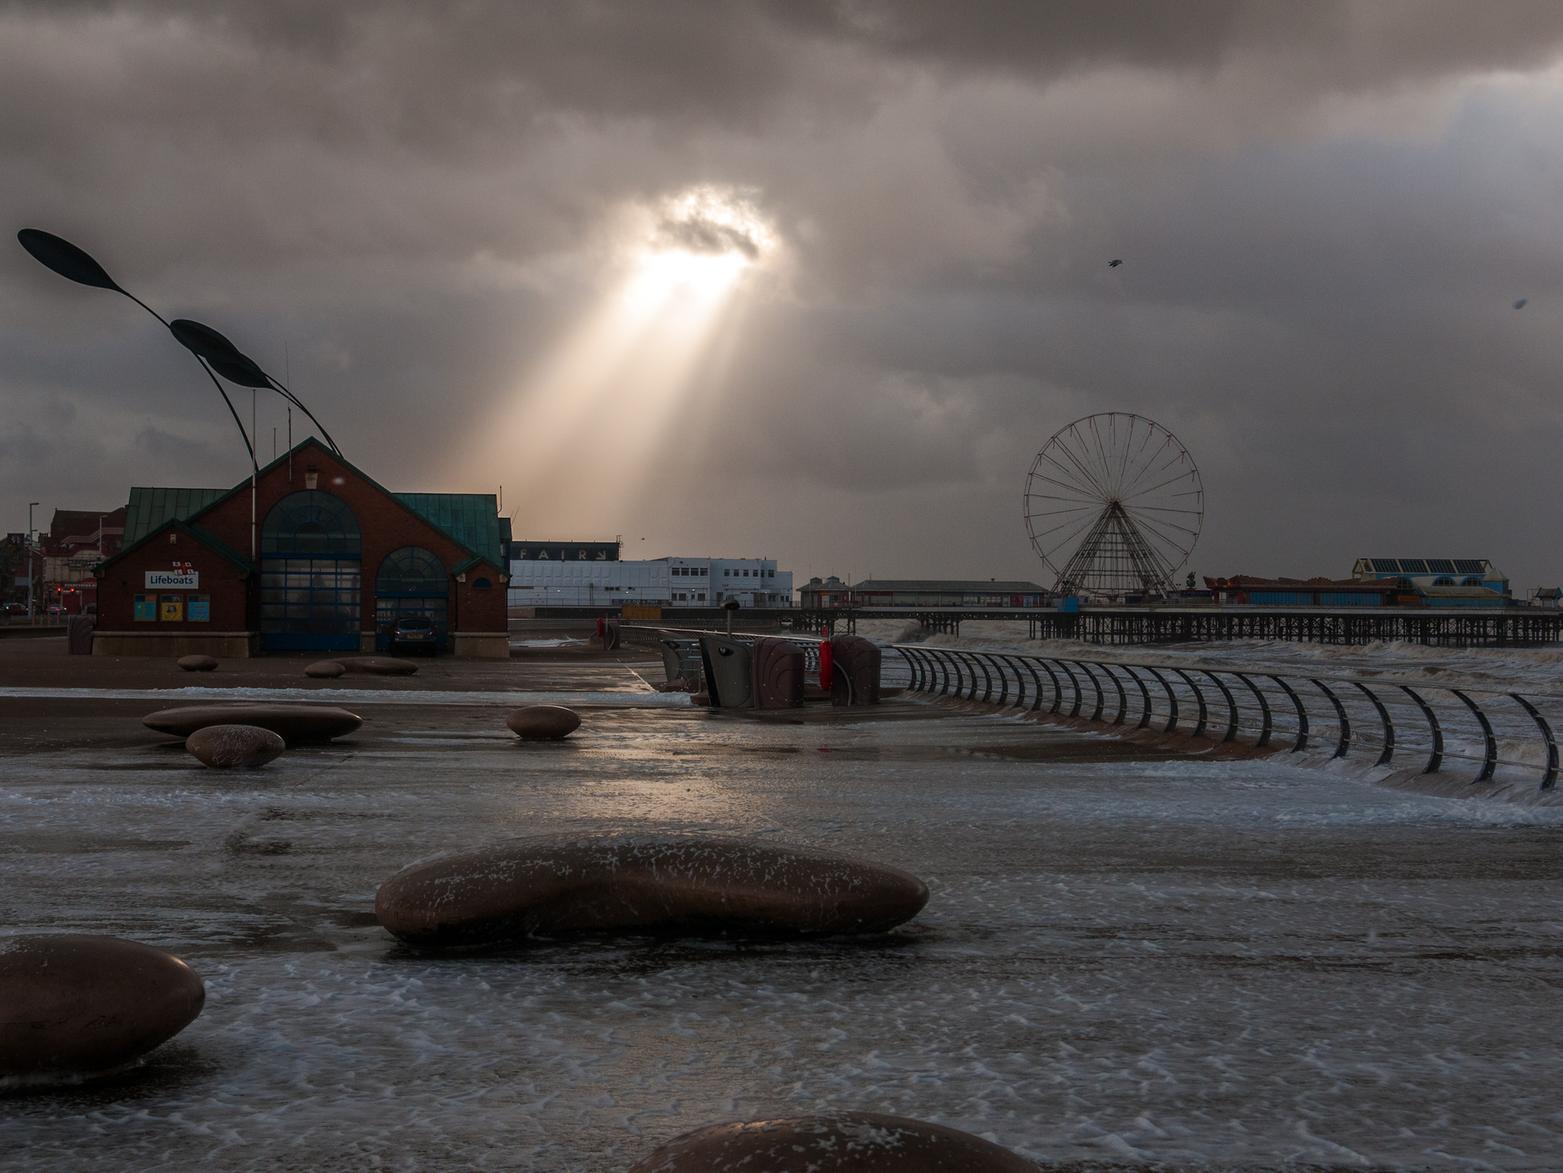 Stormy conditions on Blackpool Promenade (Pic: Dan Martino)